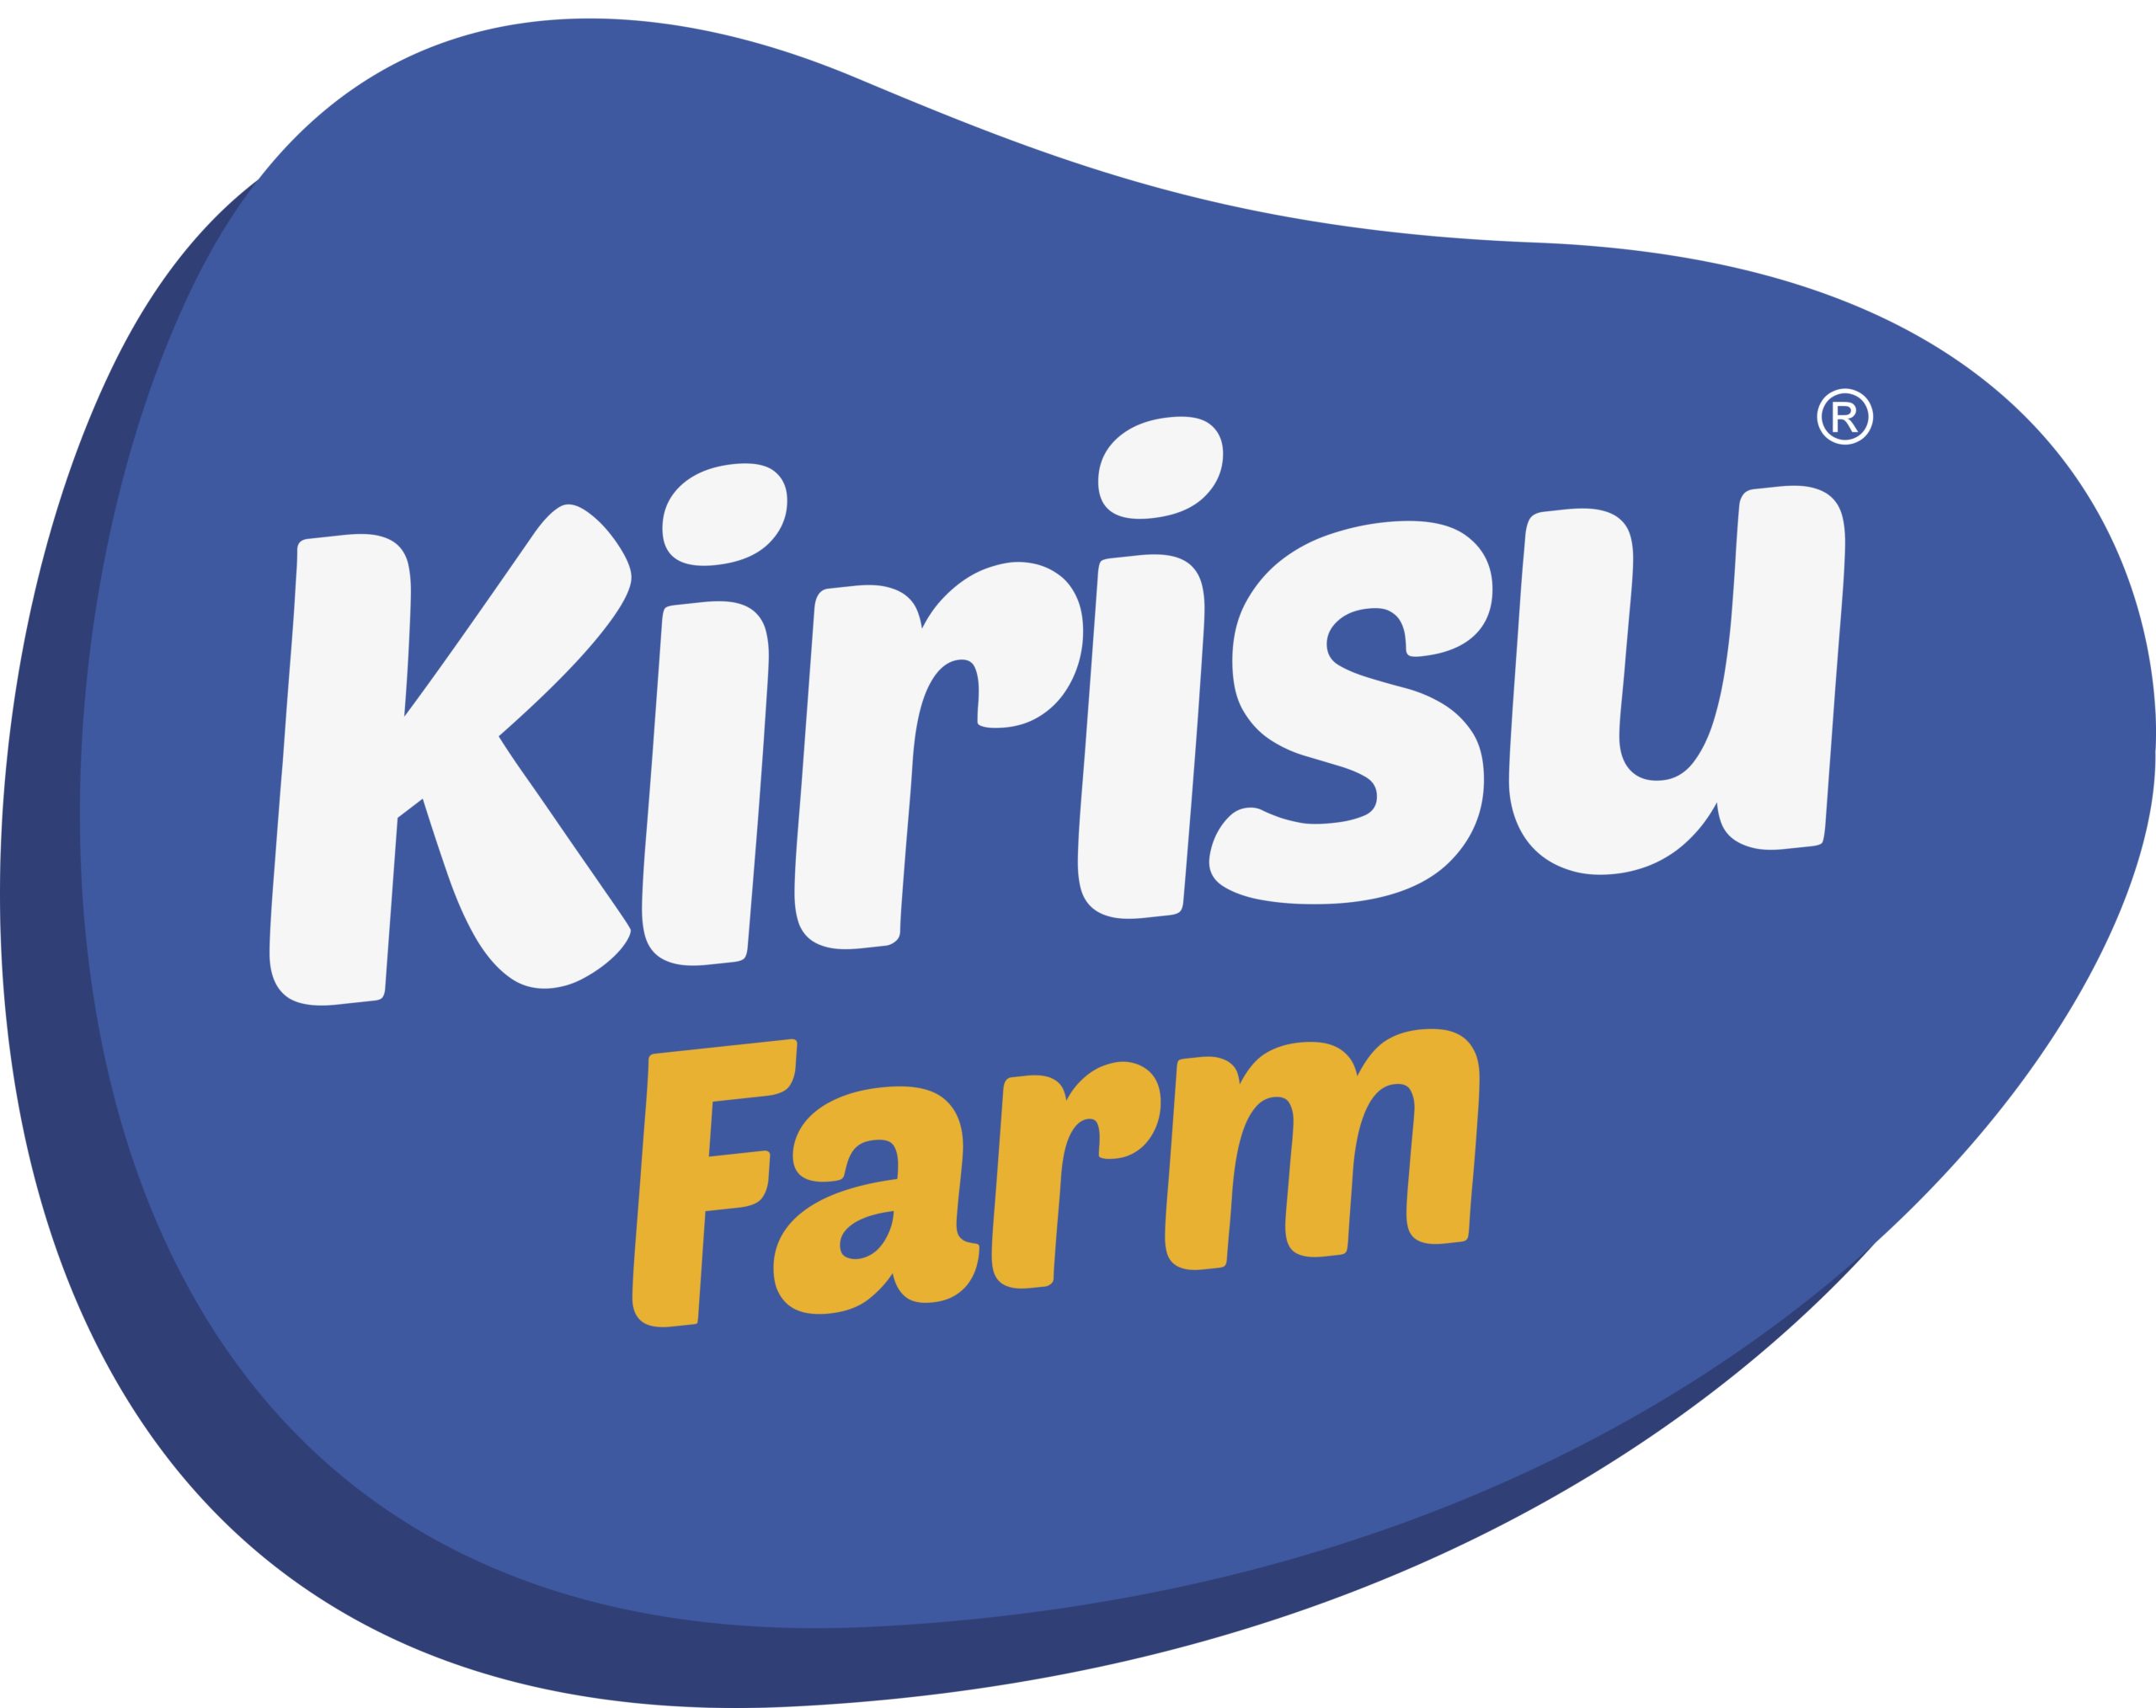 Kirisu Farm